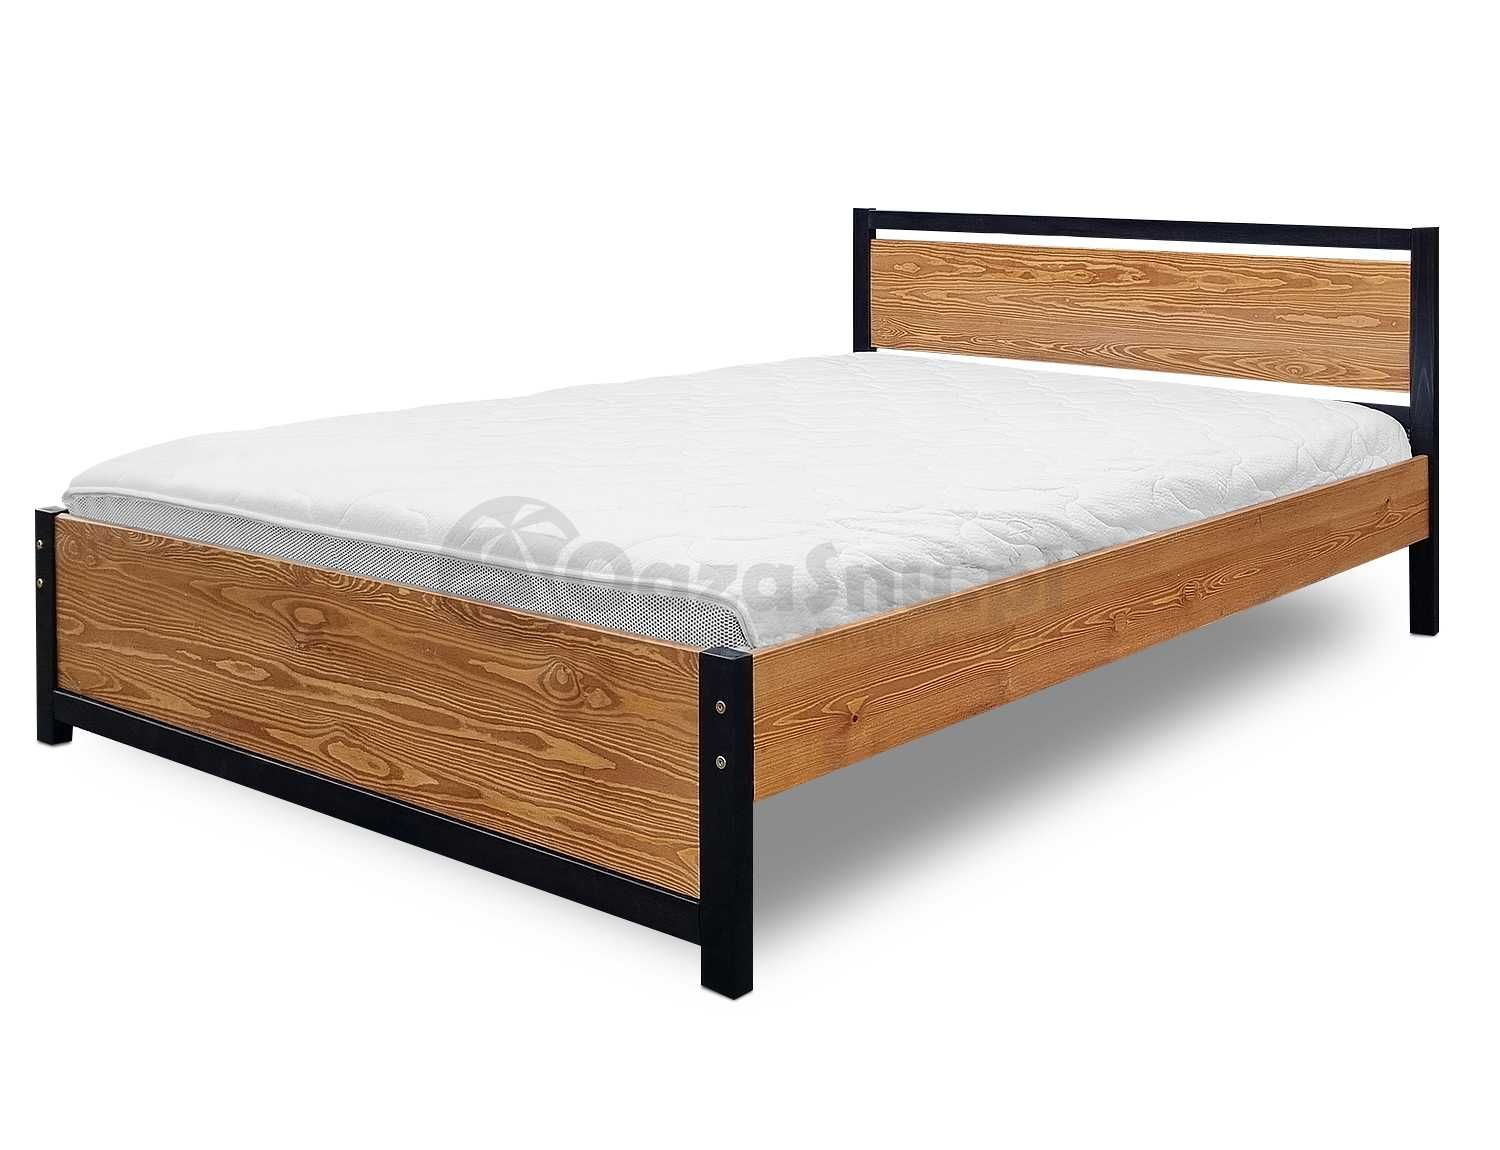 BELLI 90x200 łóżko mocne drewno wysokie +150 kg dla wysokich osób